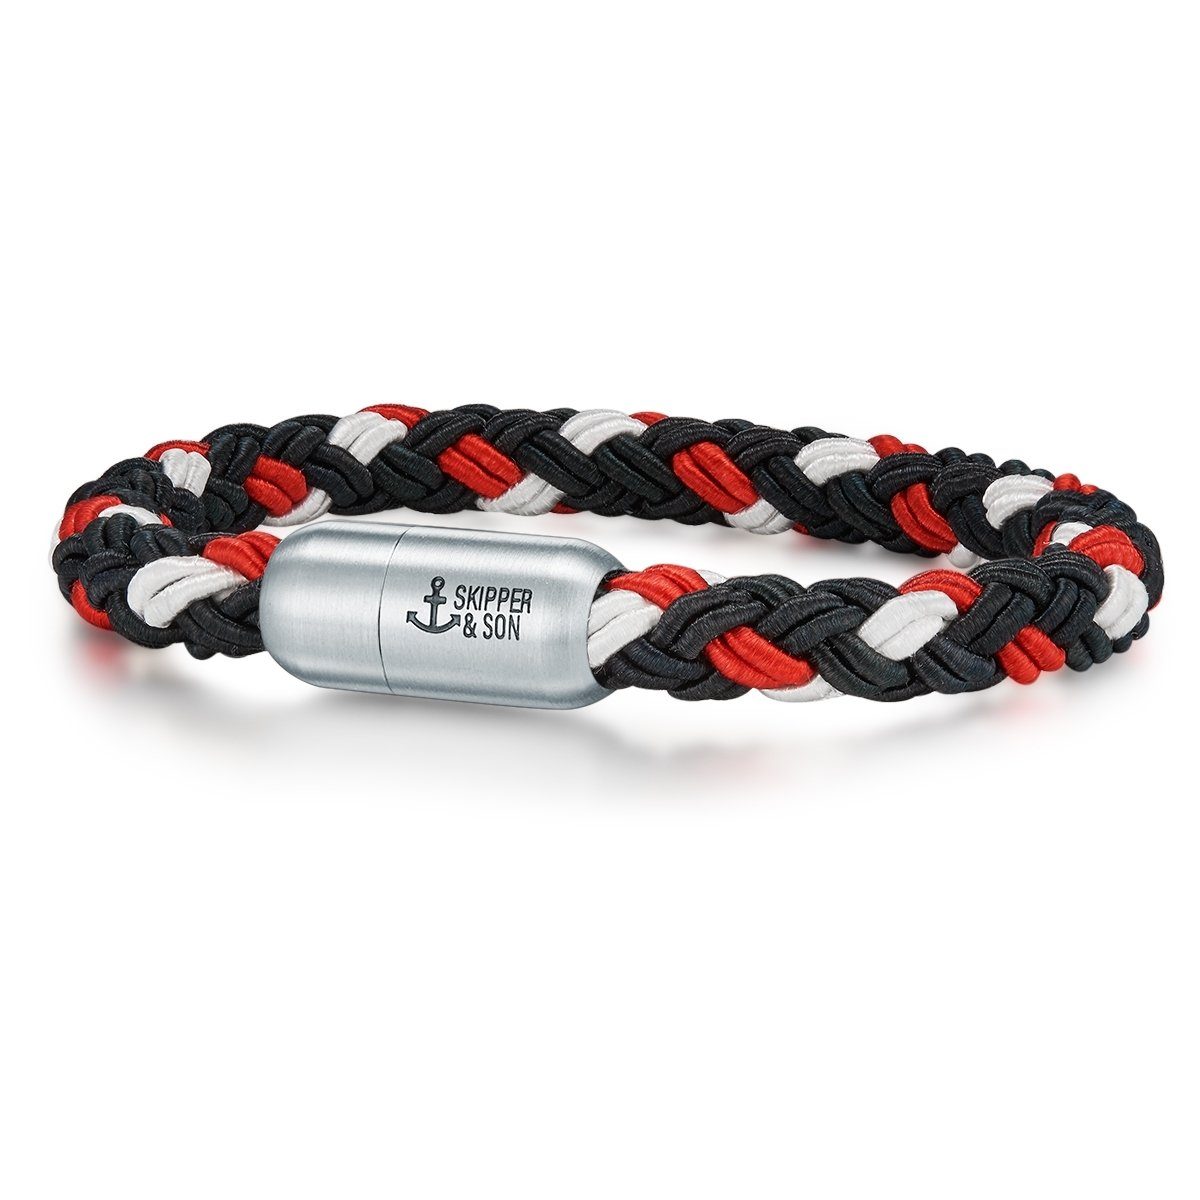 Skipper & Son Armband Segeltauarmband aus Nylonkordel, in schwarz/rot/weiß, aus Segeltau